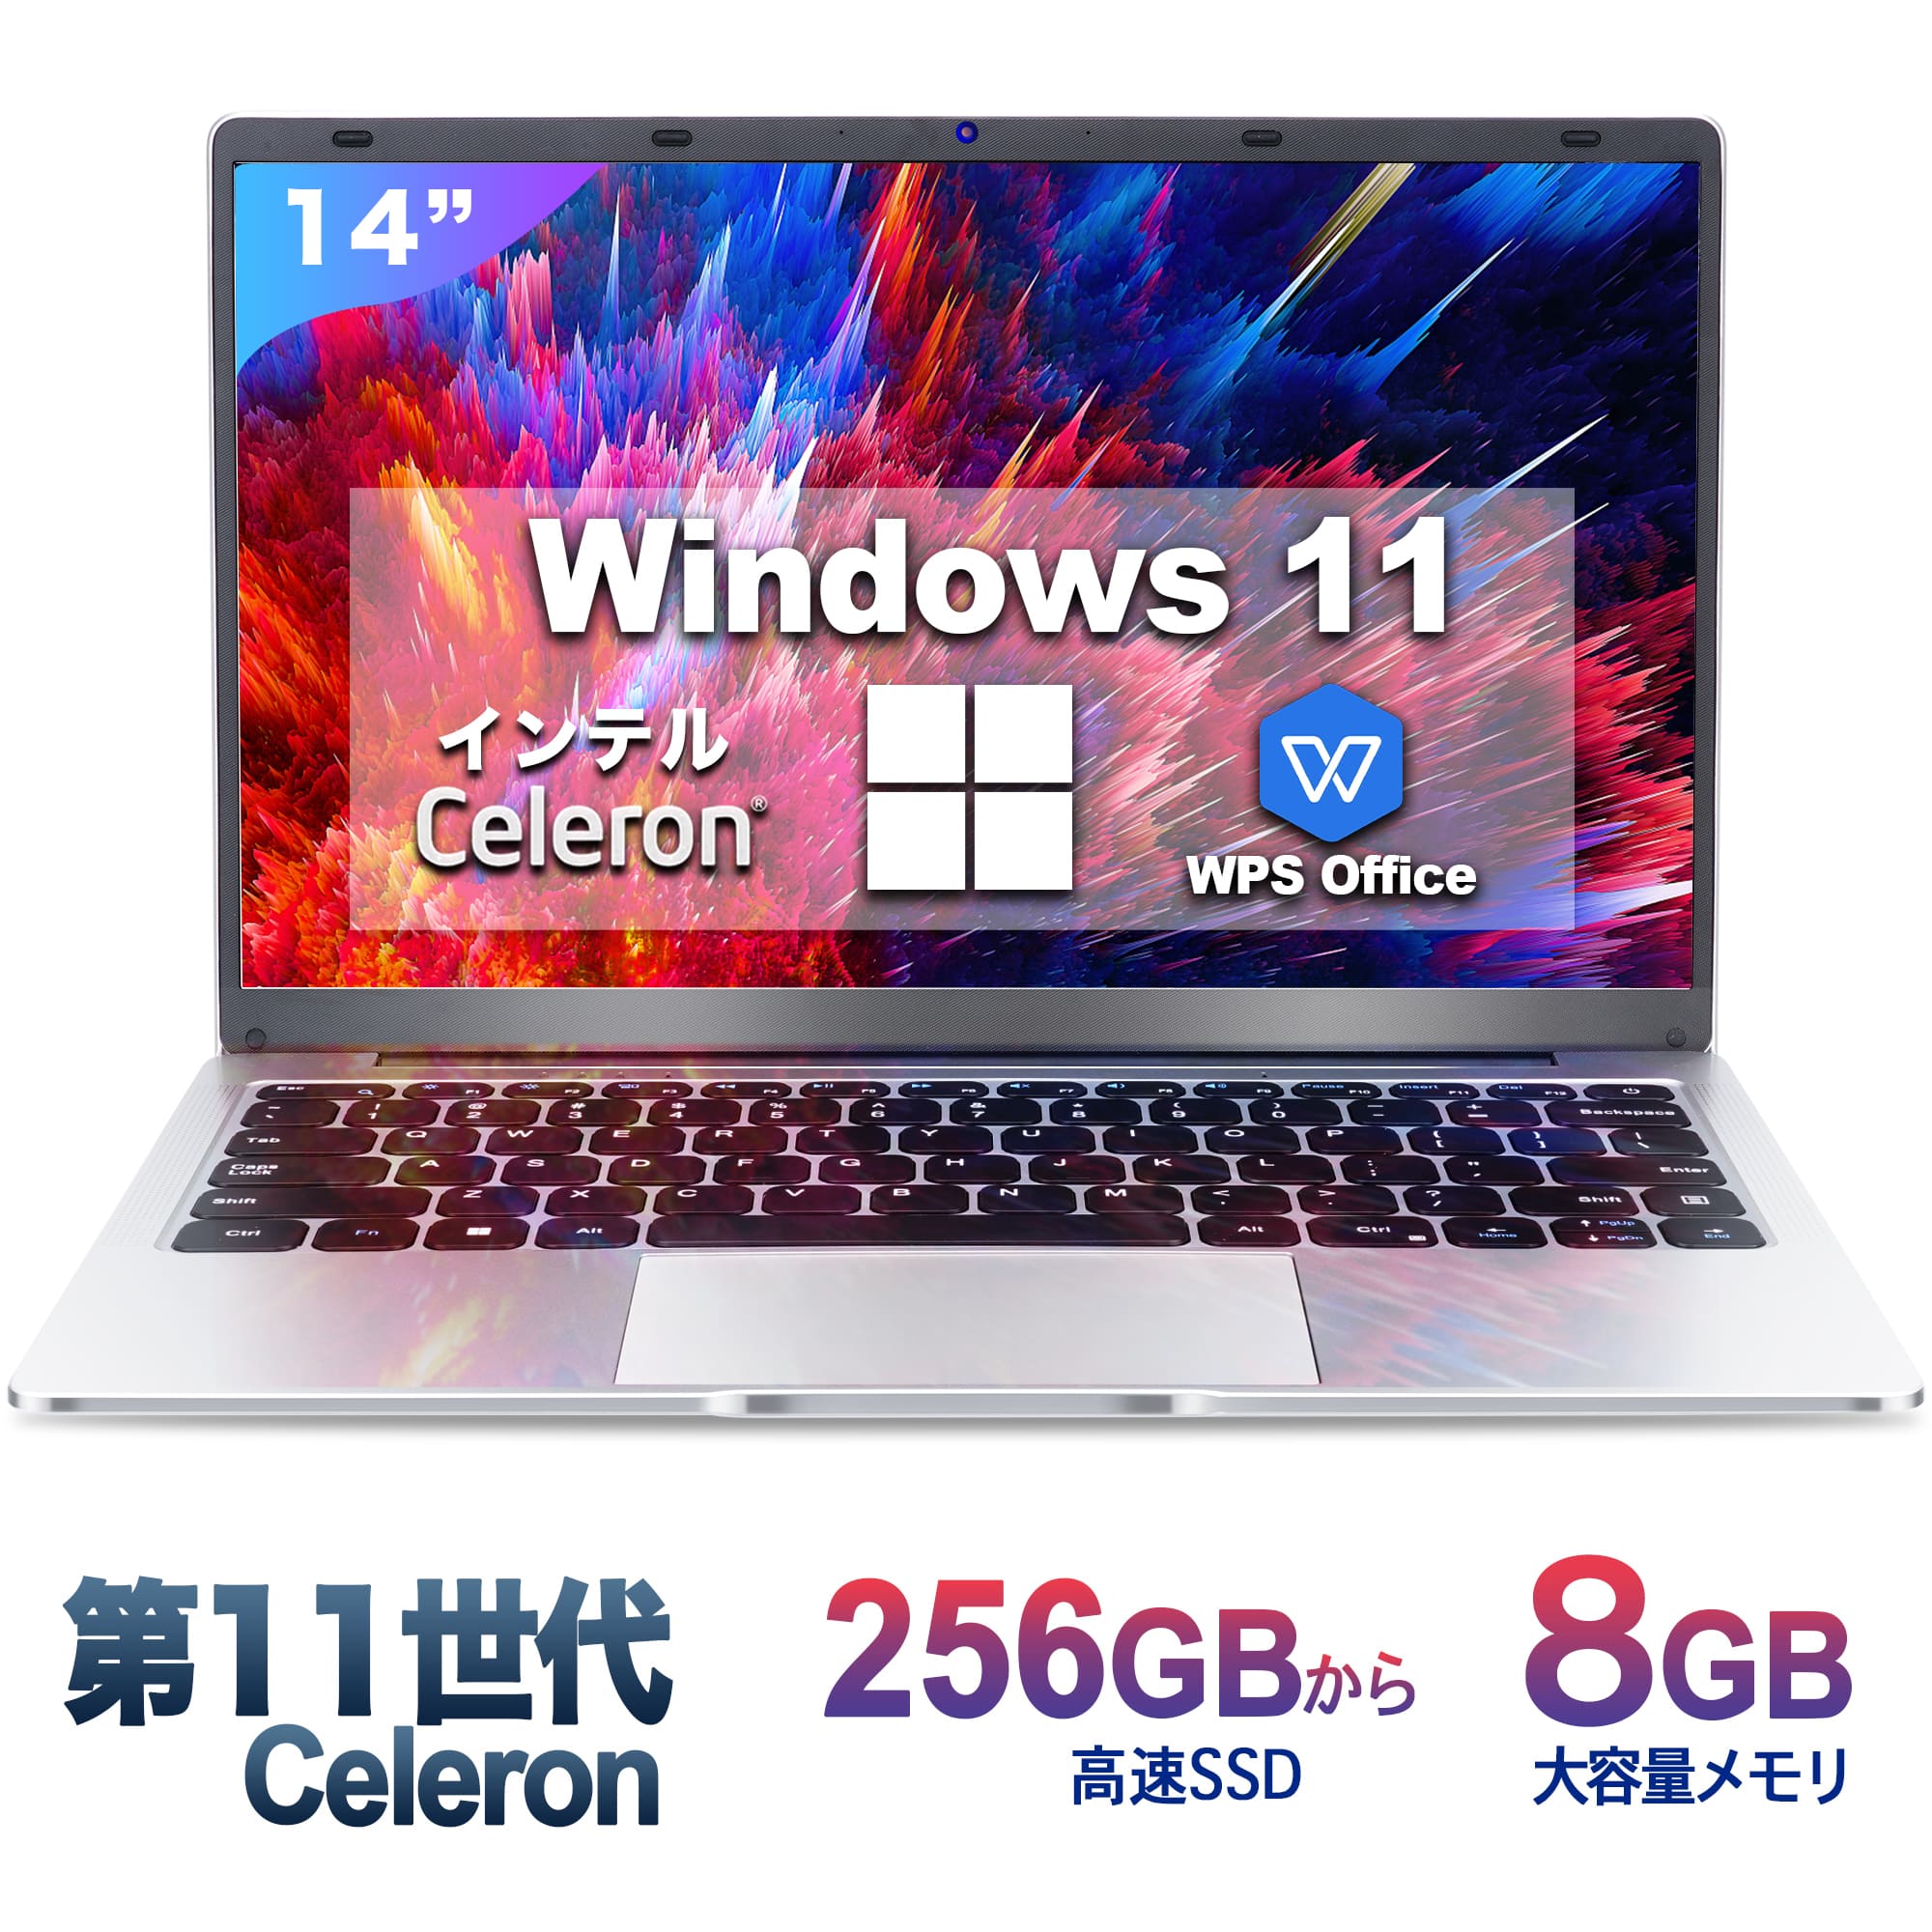 ノートパソコン 新品 office搭載 Windows11 ノートPC 14インチパソコン 8GB 256GB パソコンOffice2019搭載 薄型ノートPC インテルCeleron N3350 日本語キーボードデュアル USB3.0/WIFI/Bluetoo…